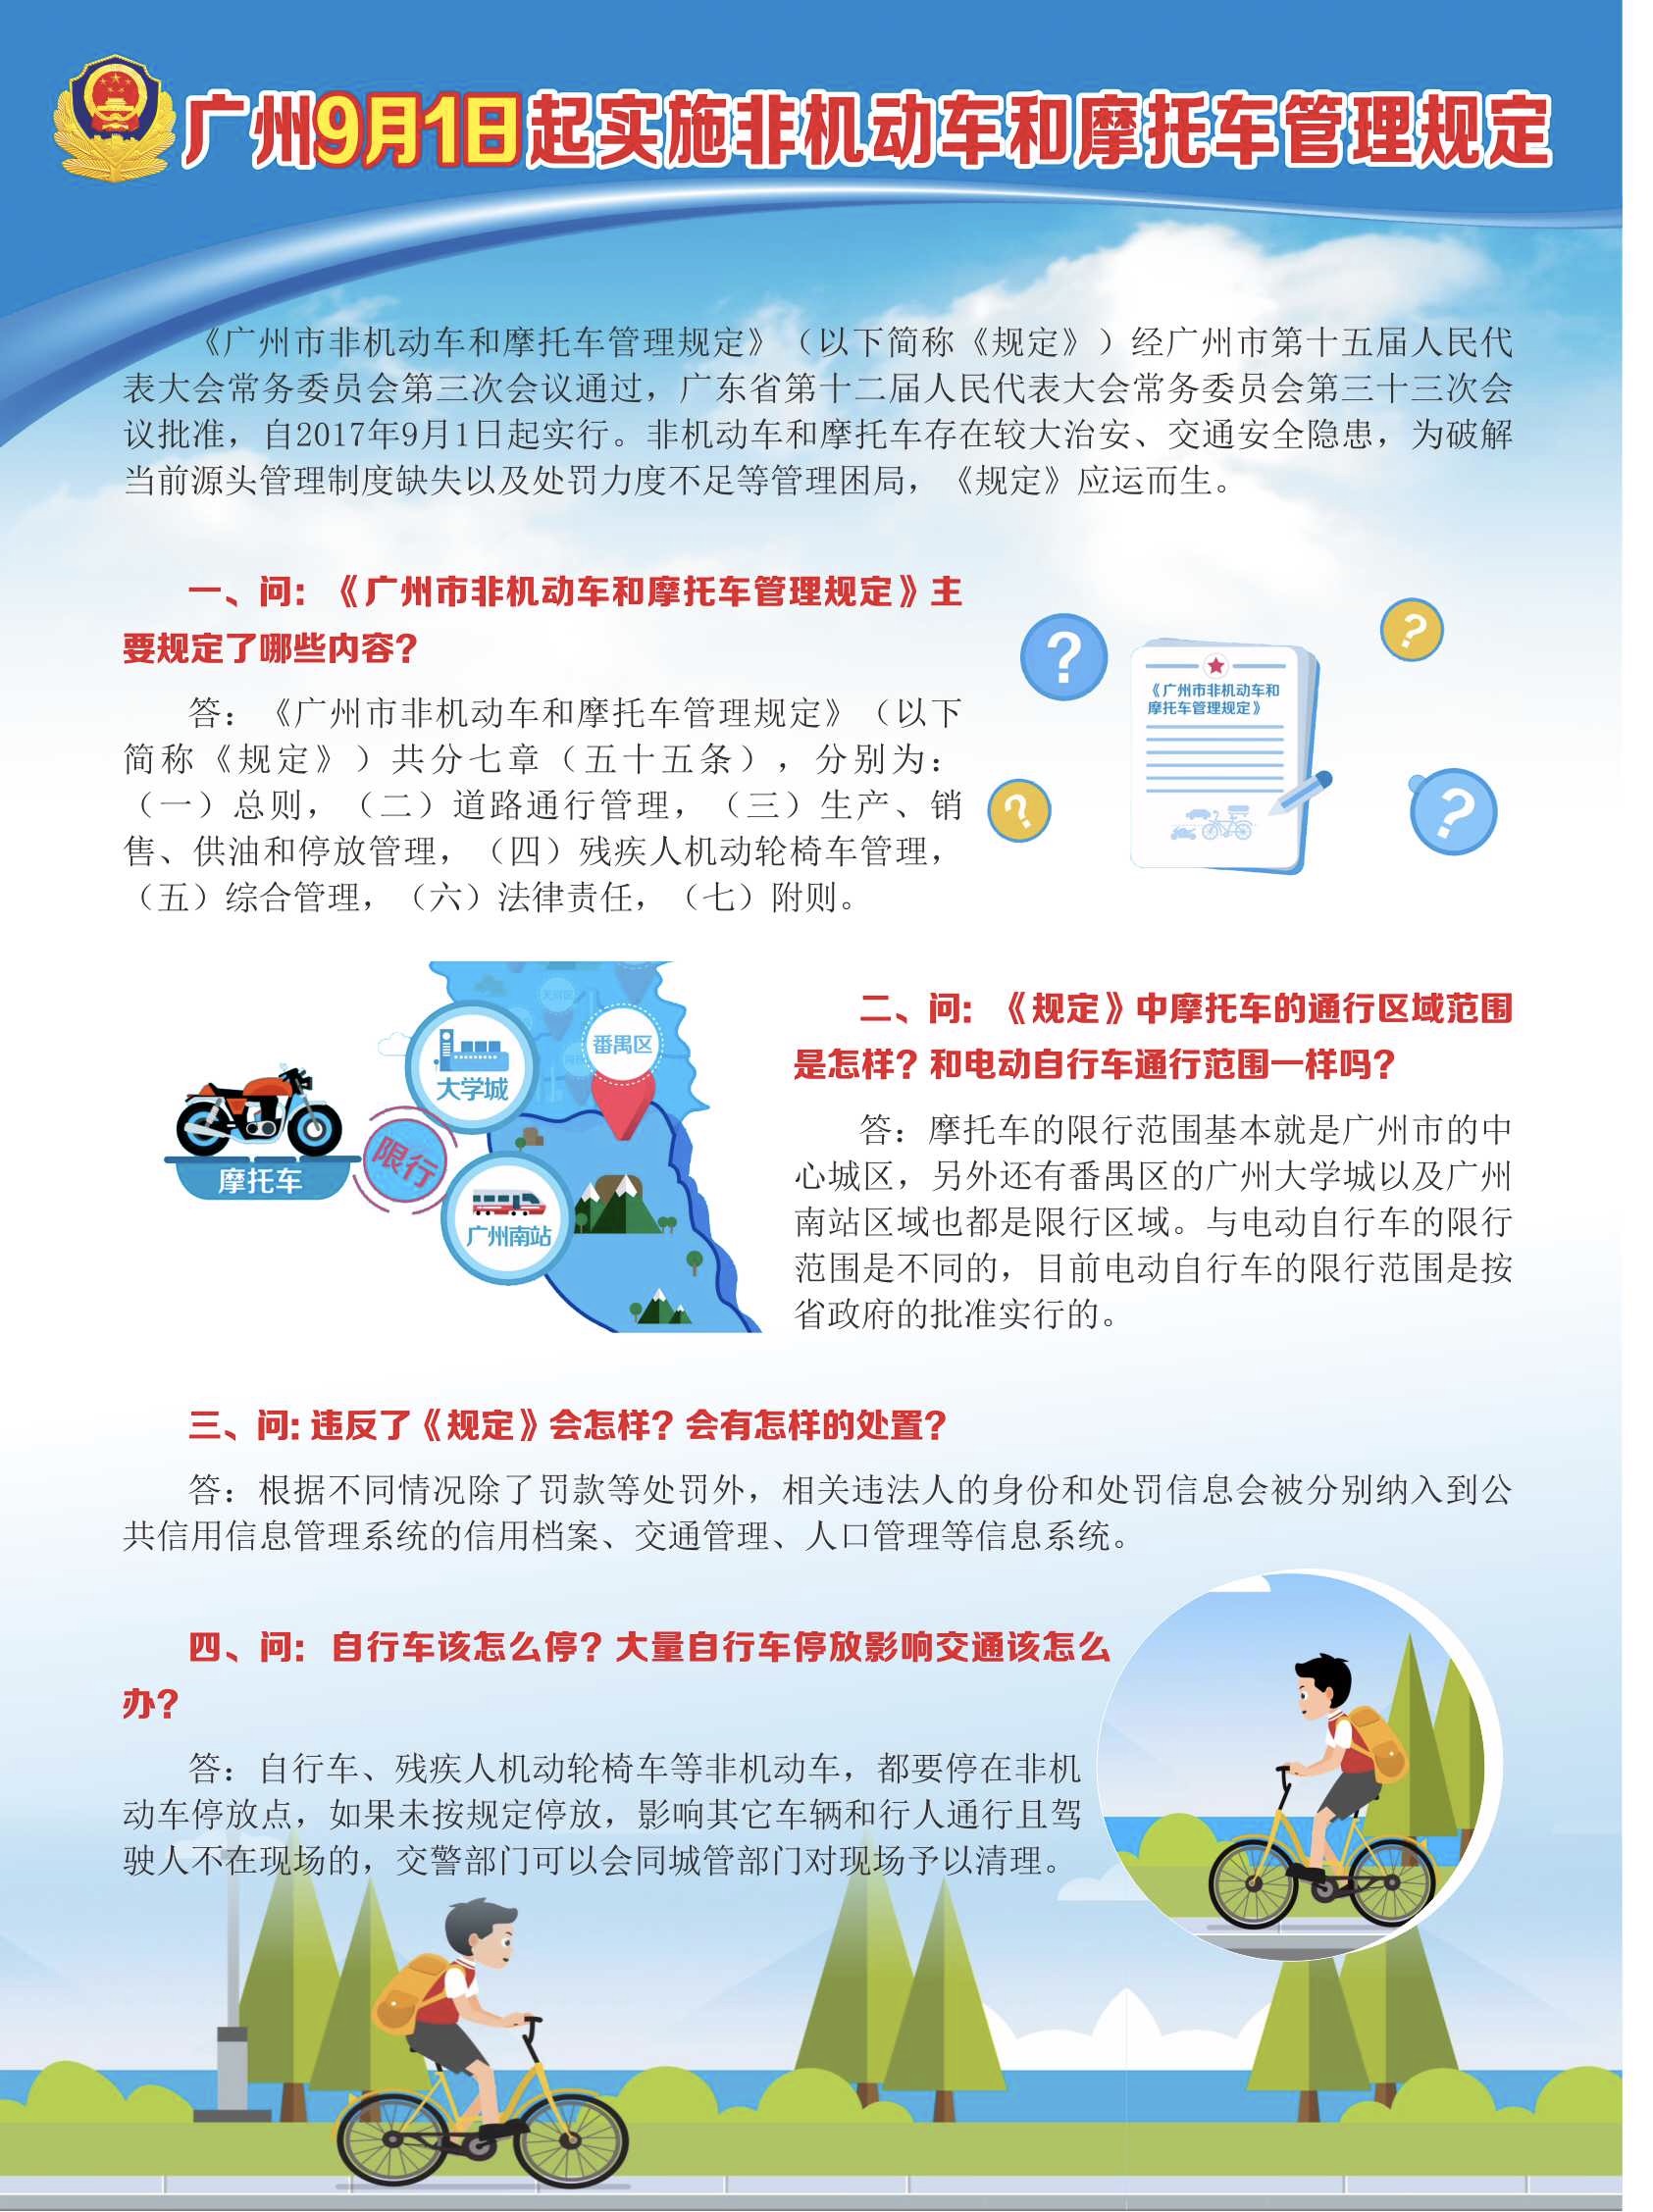 广州9月1日起实施非机动车和摩托车管理规定